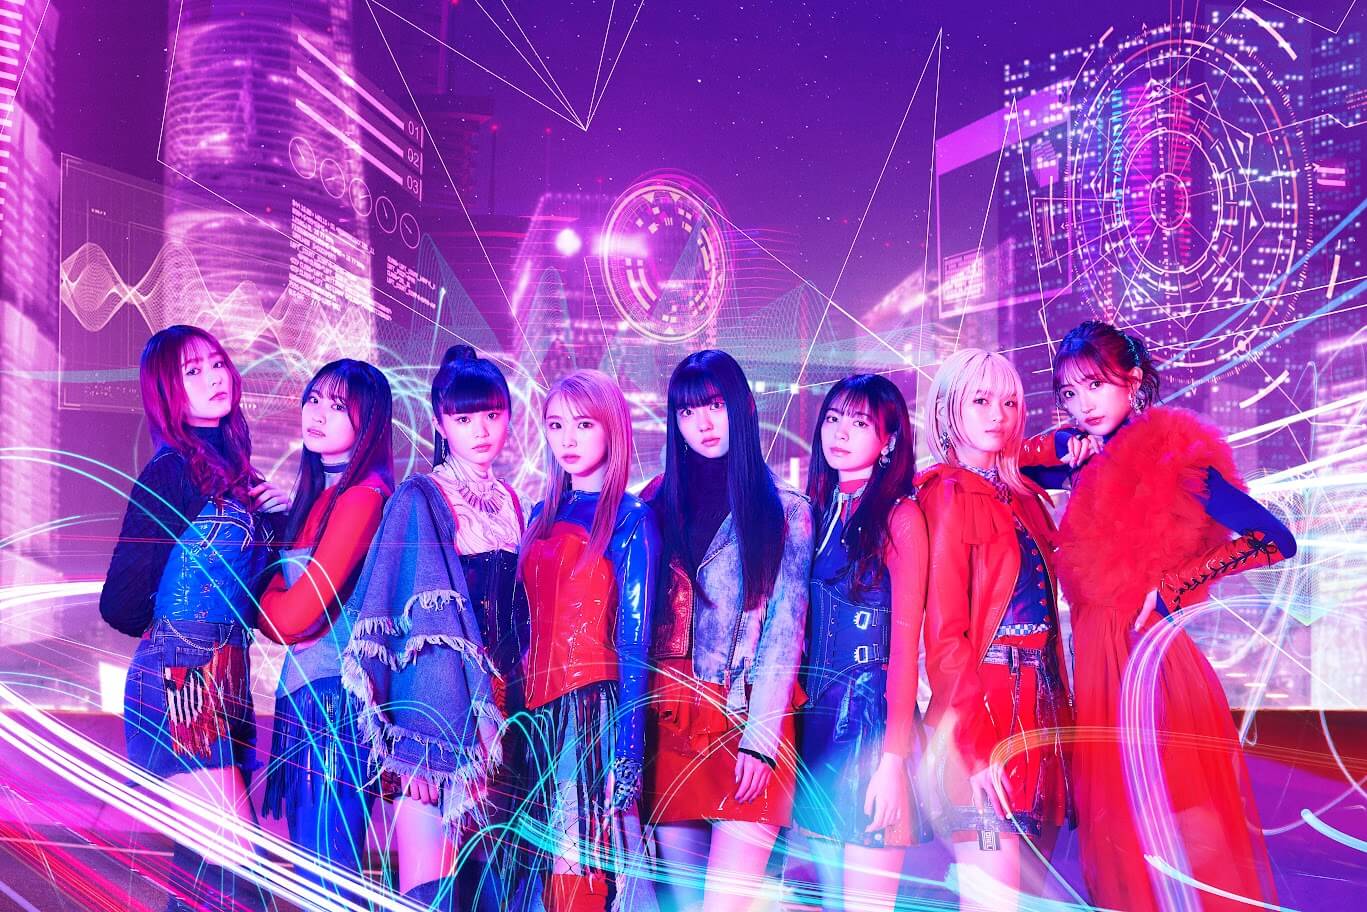 7/16(日)『Girls²のがるがるトーク!』公開収録in那須ハイランドパーク観覧方法変更について